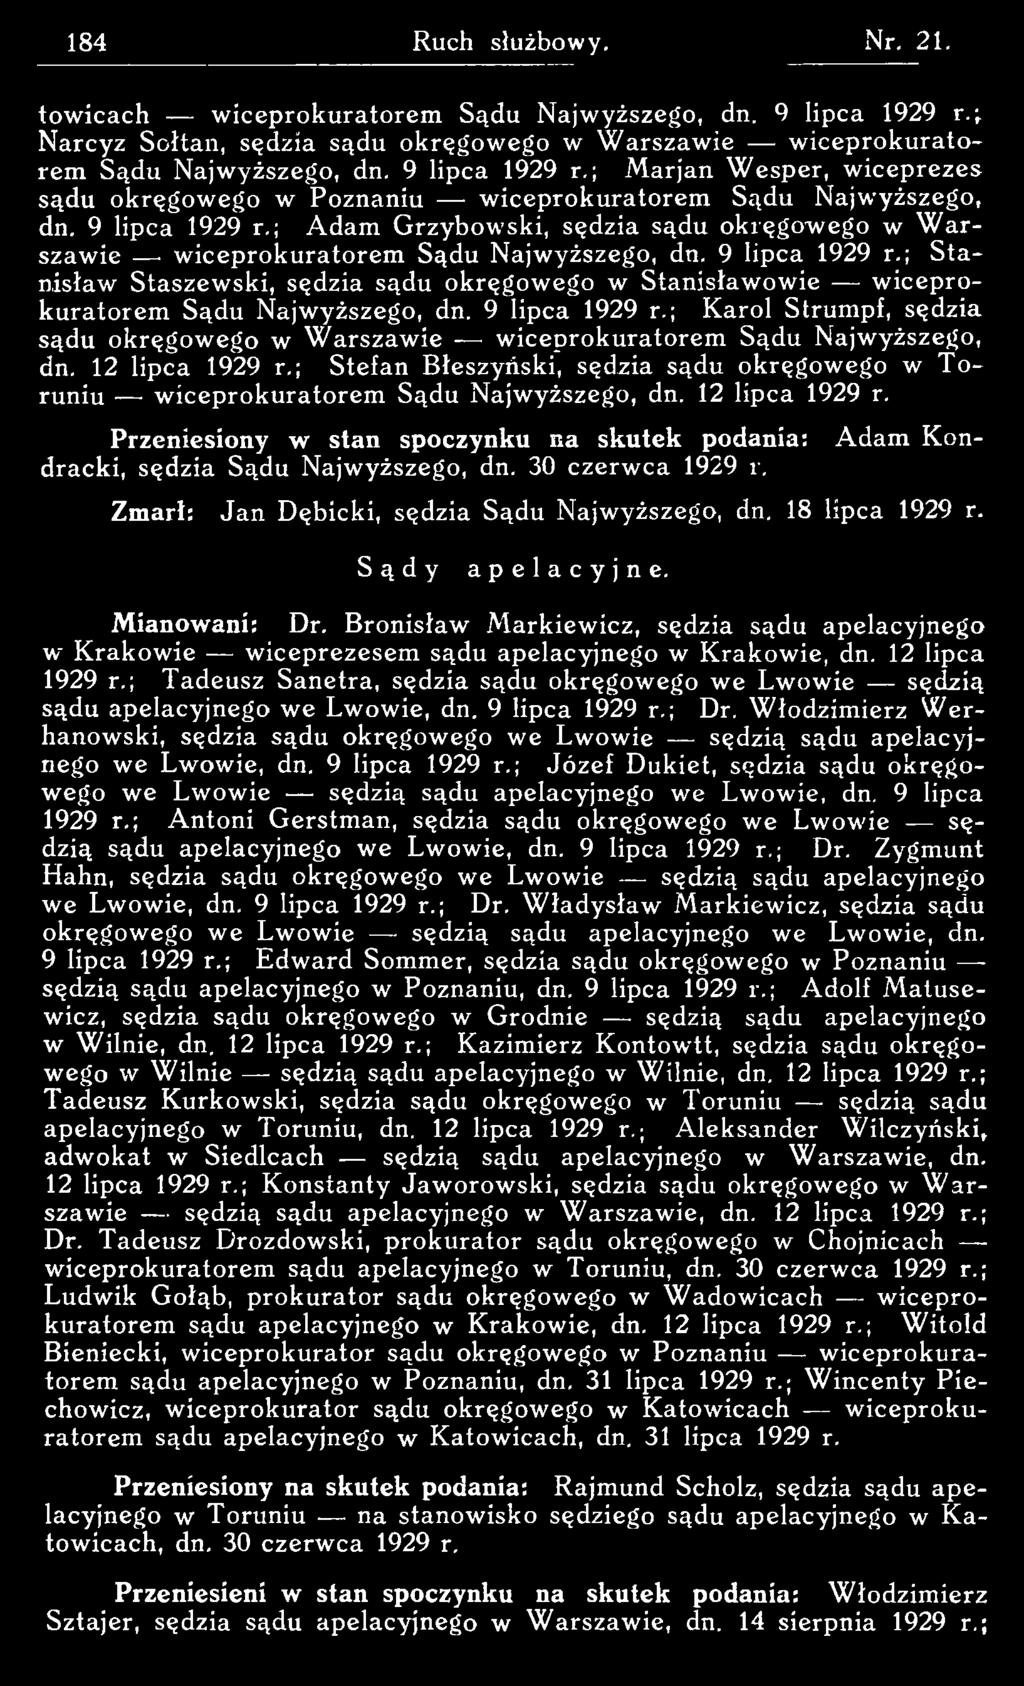 ; Stefan Błeszyński, sędzia sądu okręgow ego w T o runiu w iceprokuratorem Sądu Najwyższego, dn. 12 lipca 1929 r.